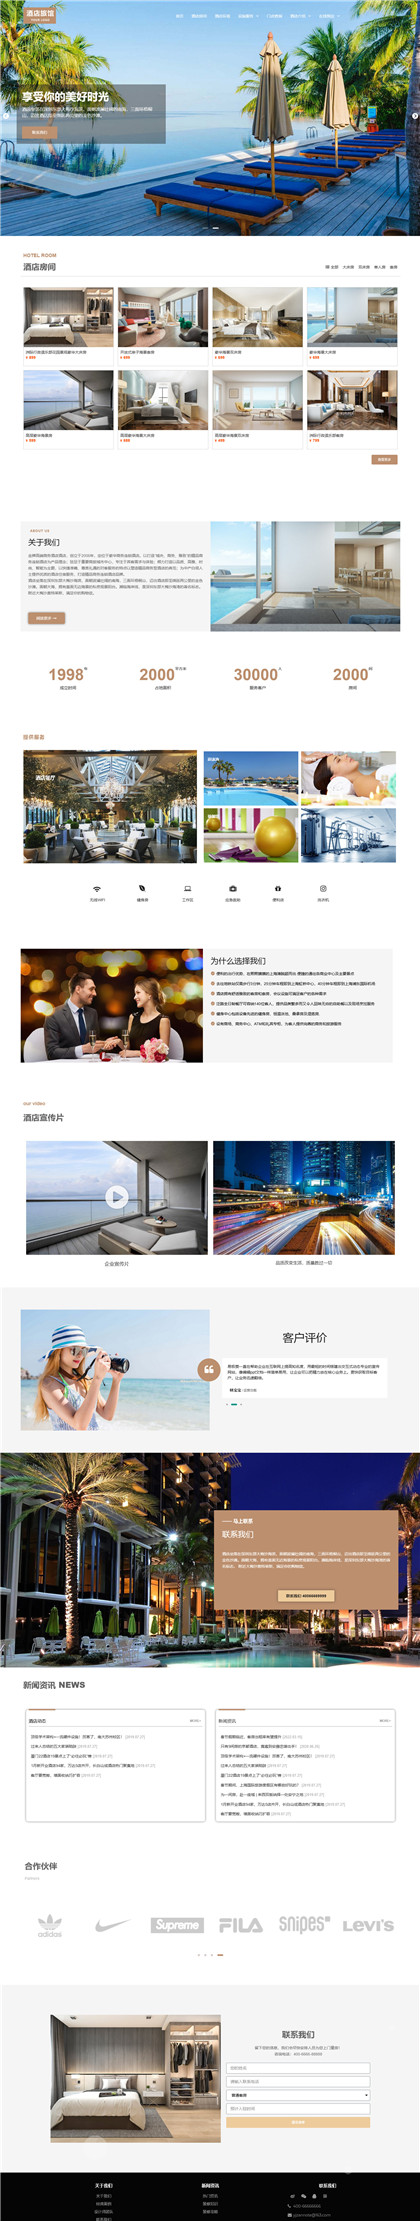 商务酒店-青旅-民宿-青年旅馆网站模板网站模板图片